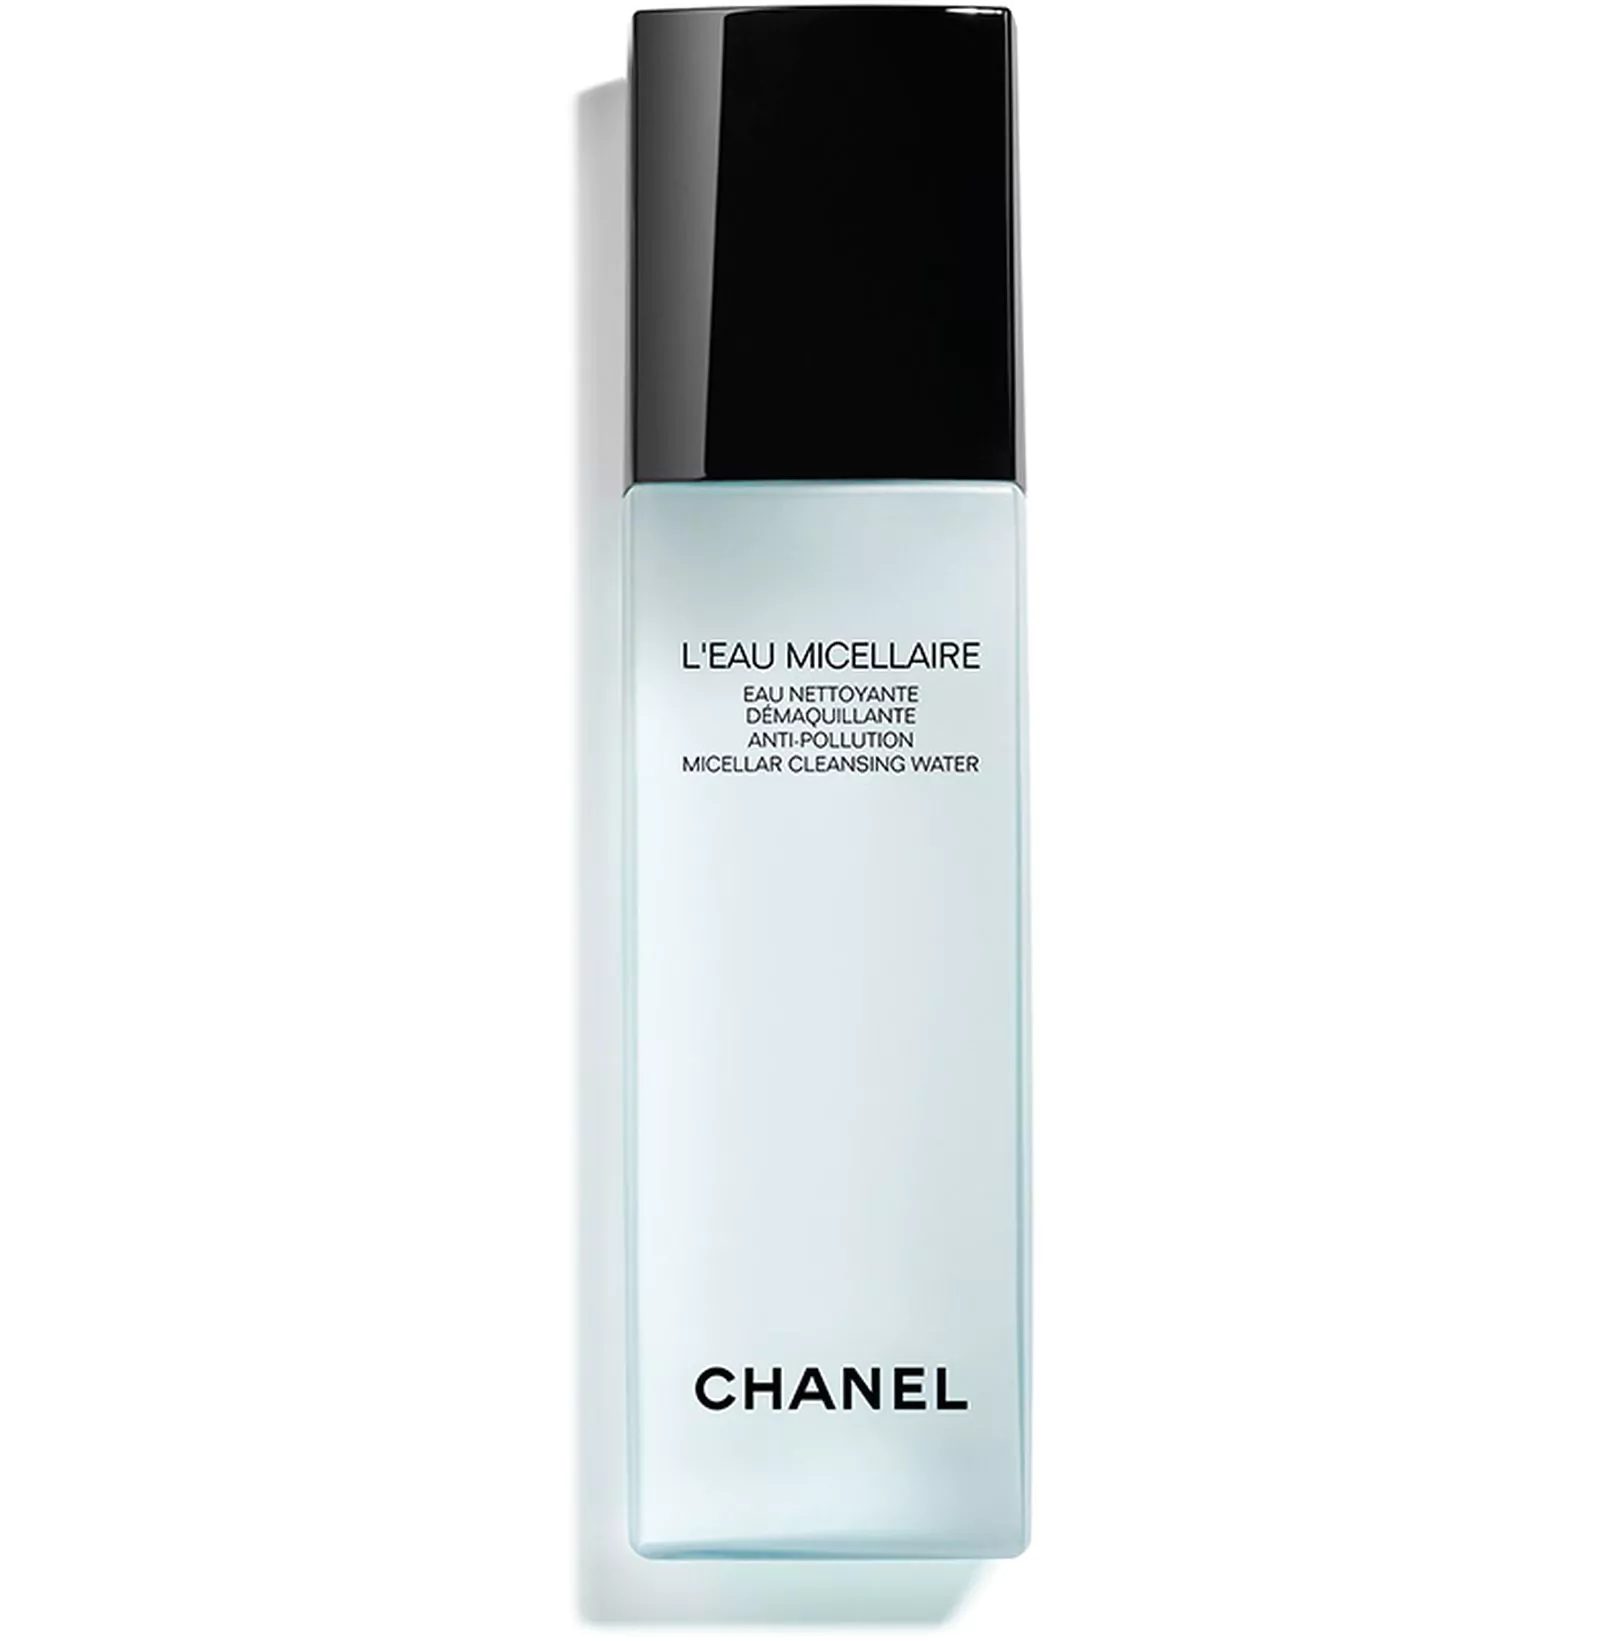 мицеллярная вода для очищения кожи Chanel L'eau Micellaire, фото 2